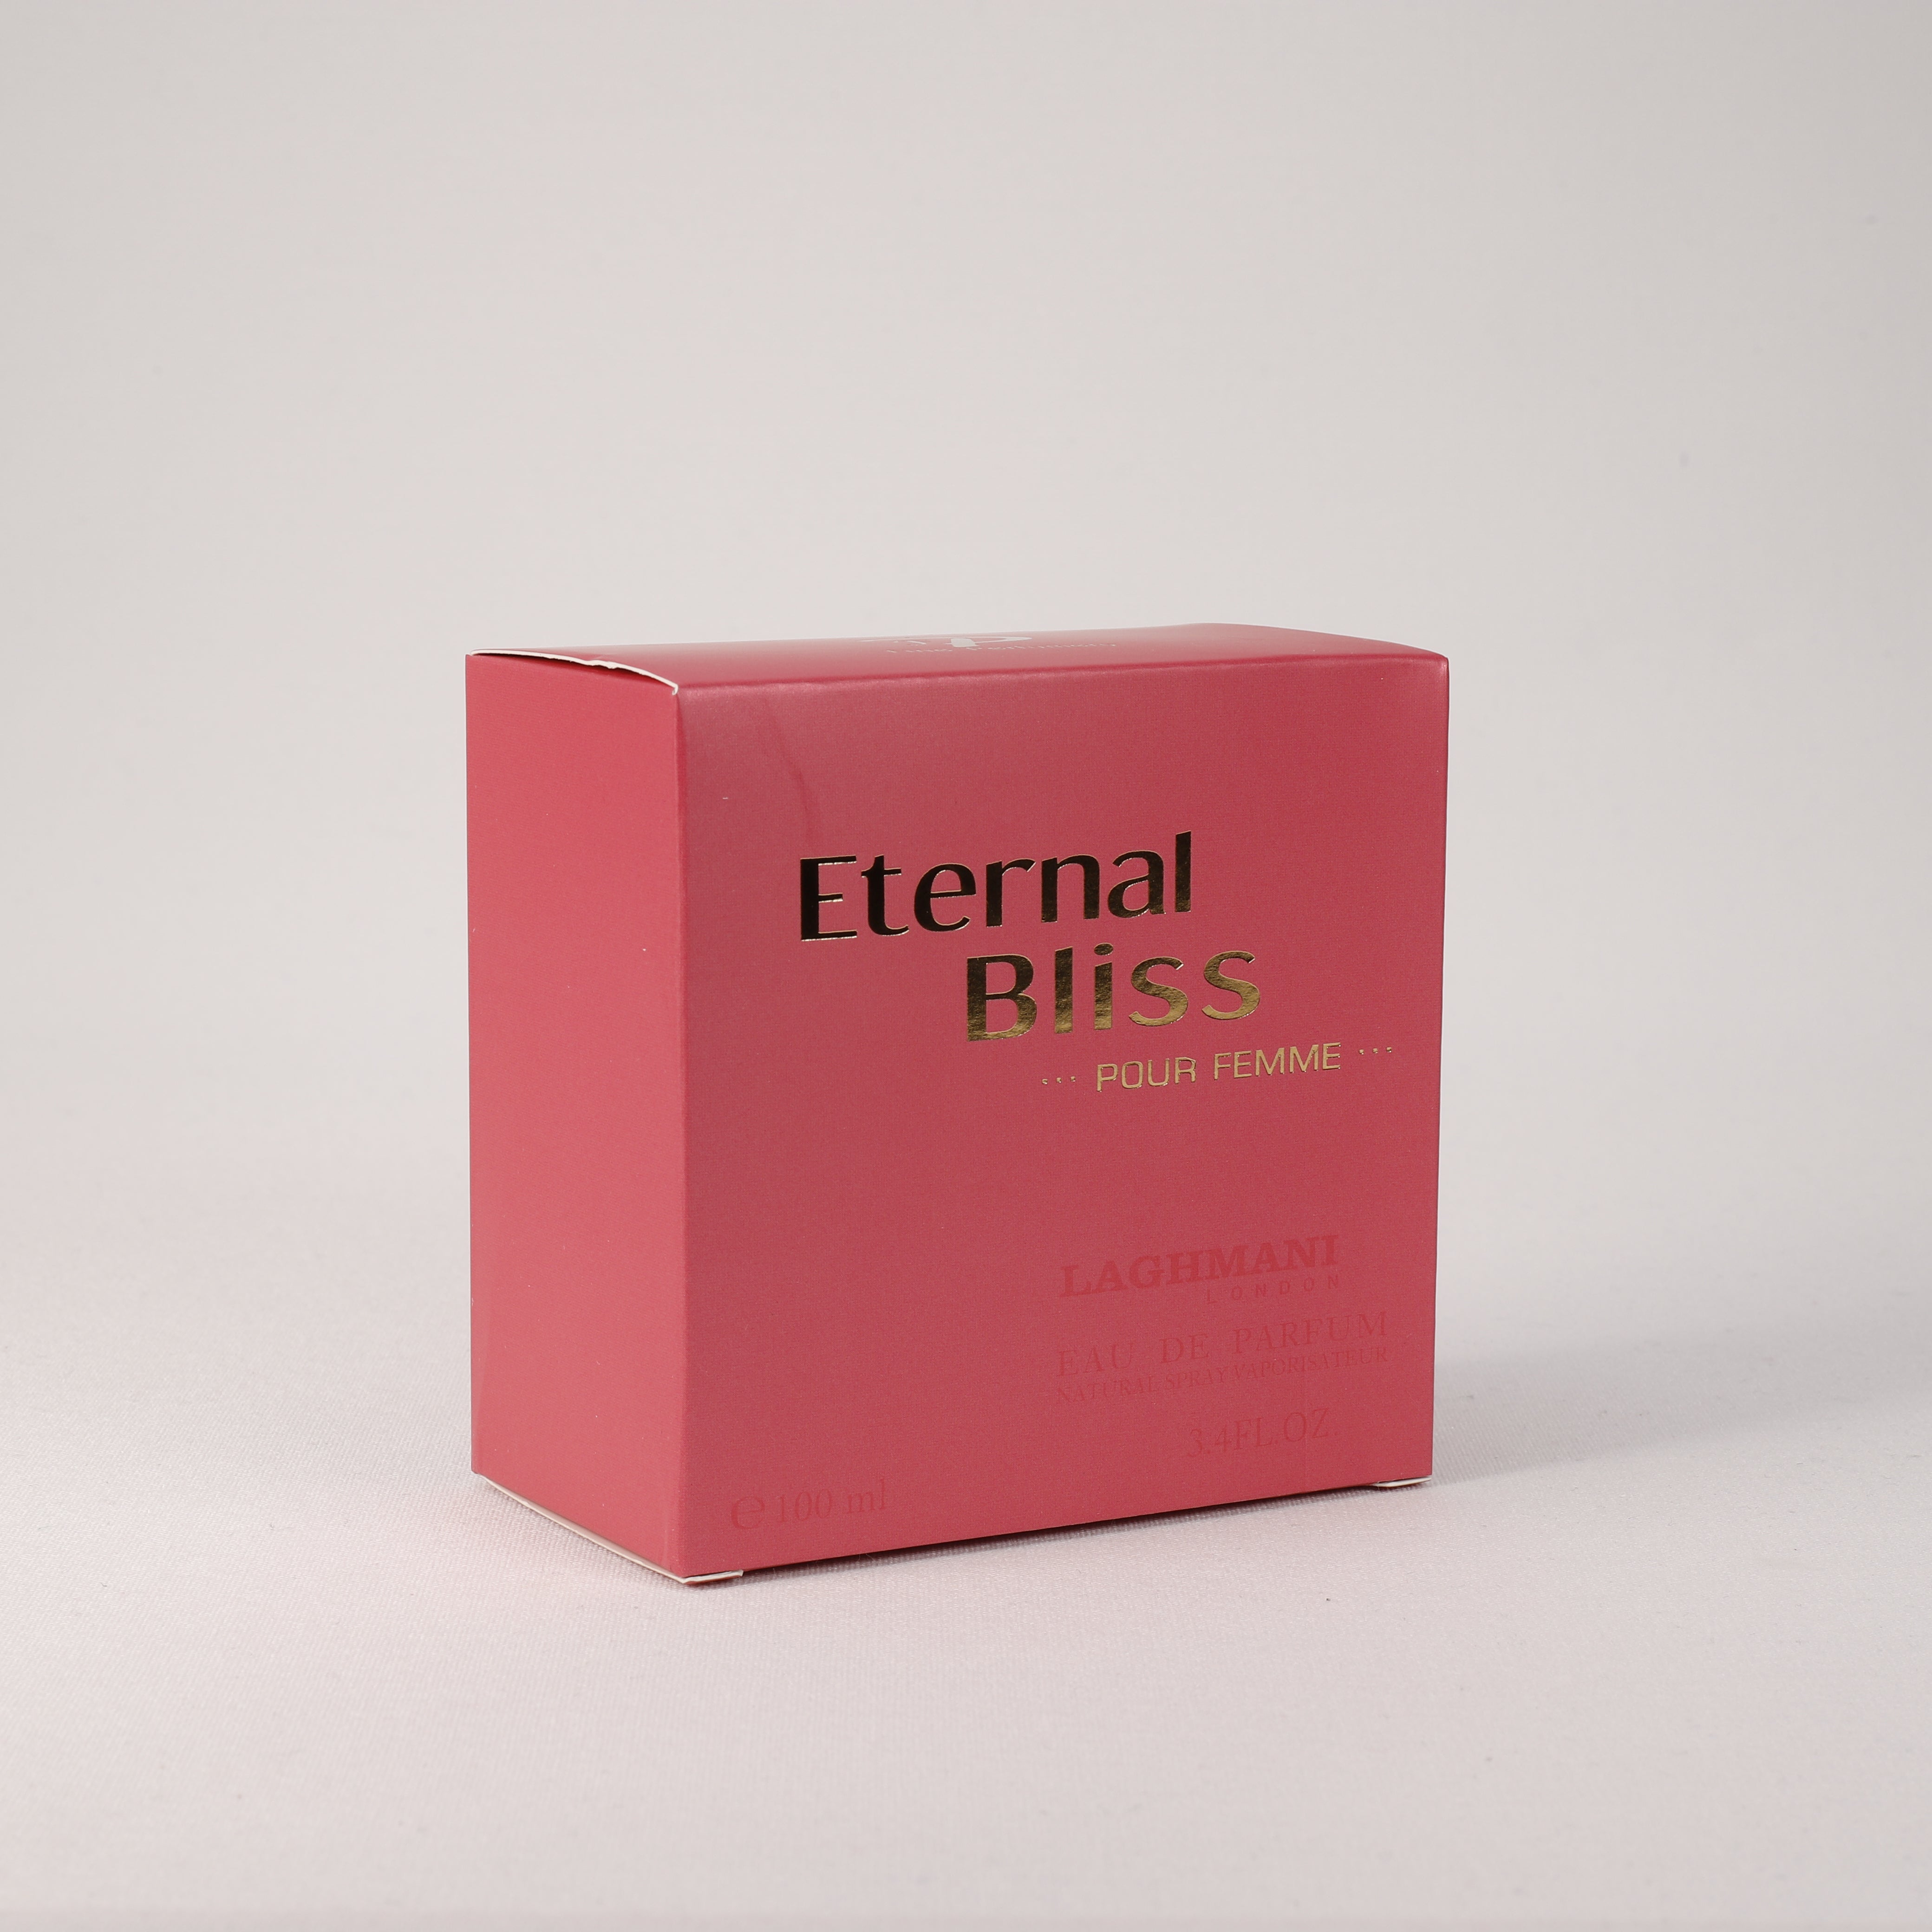 Eternal Bliss für Damen, Vaporizer mit natürlichem Spray, 100 ml, Duft, Parfum, Parfüm, NEU OVP